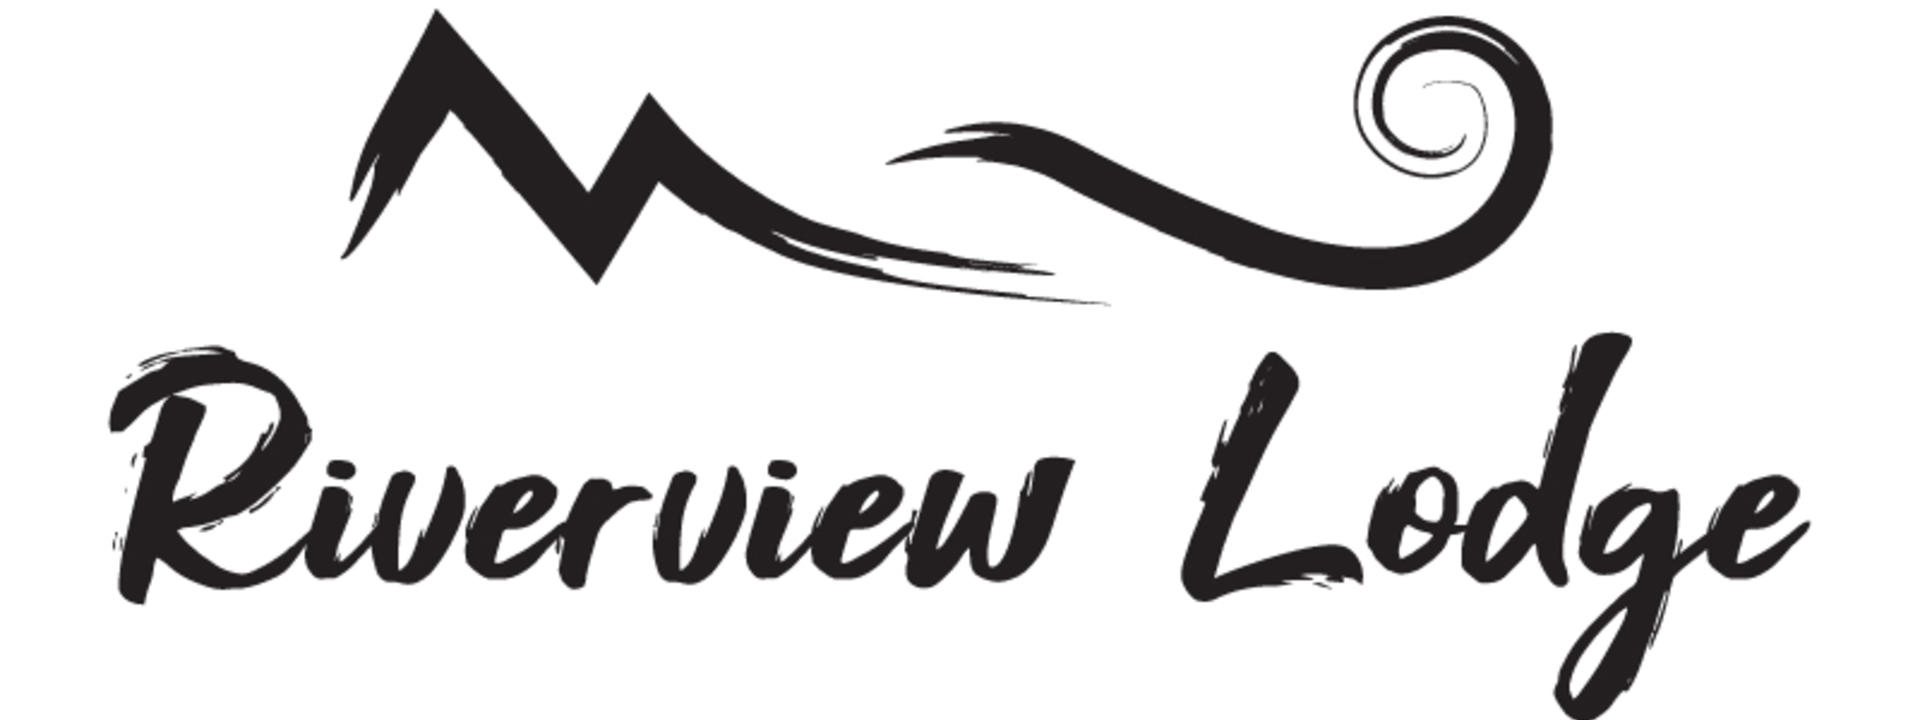 riverview-lodge-logo-800px_1.jpg